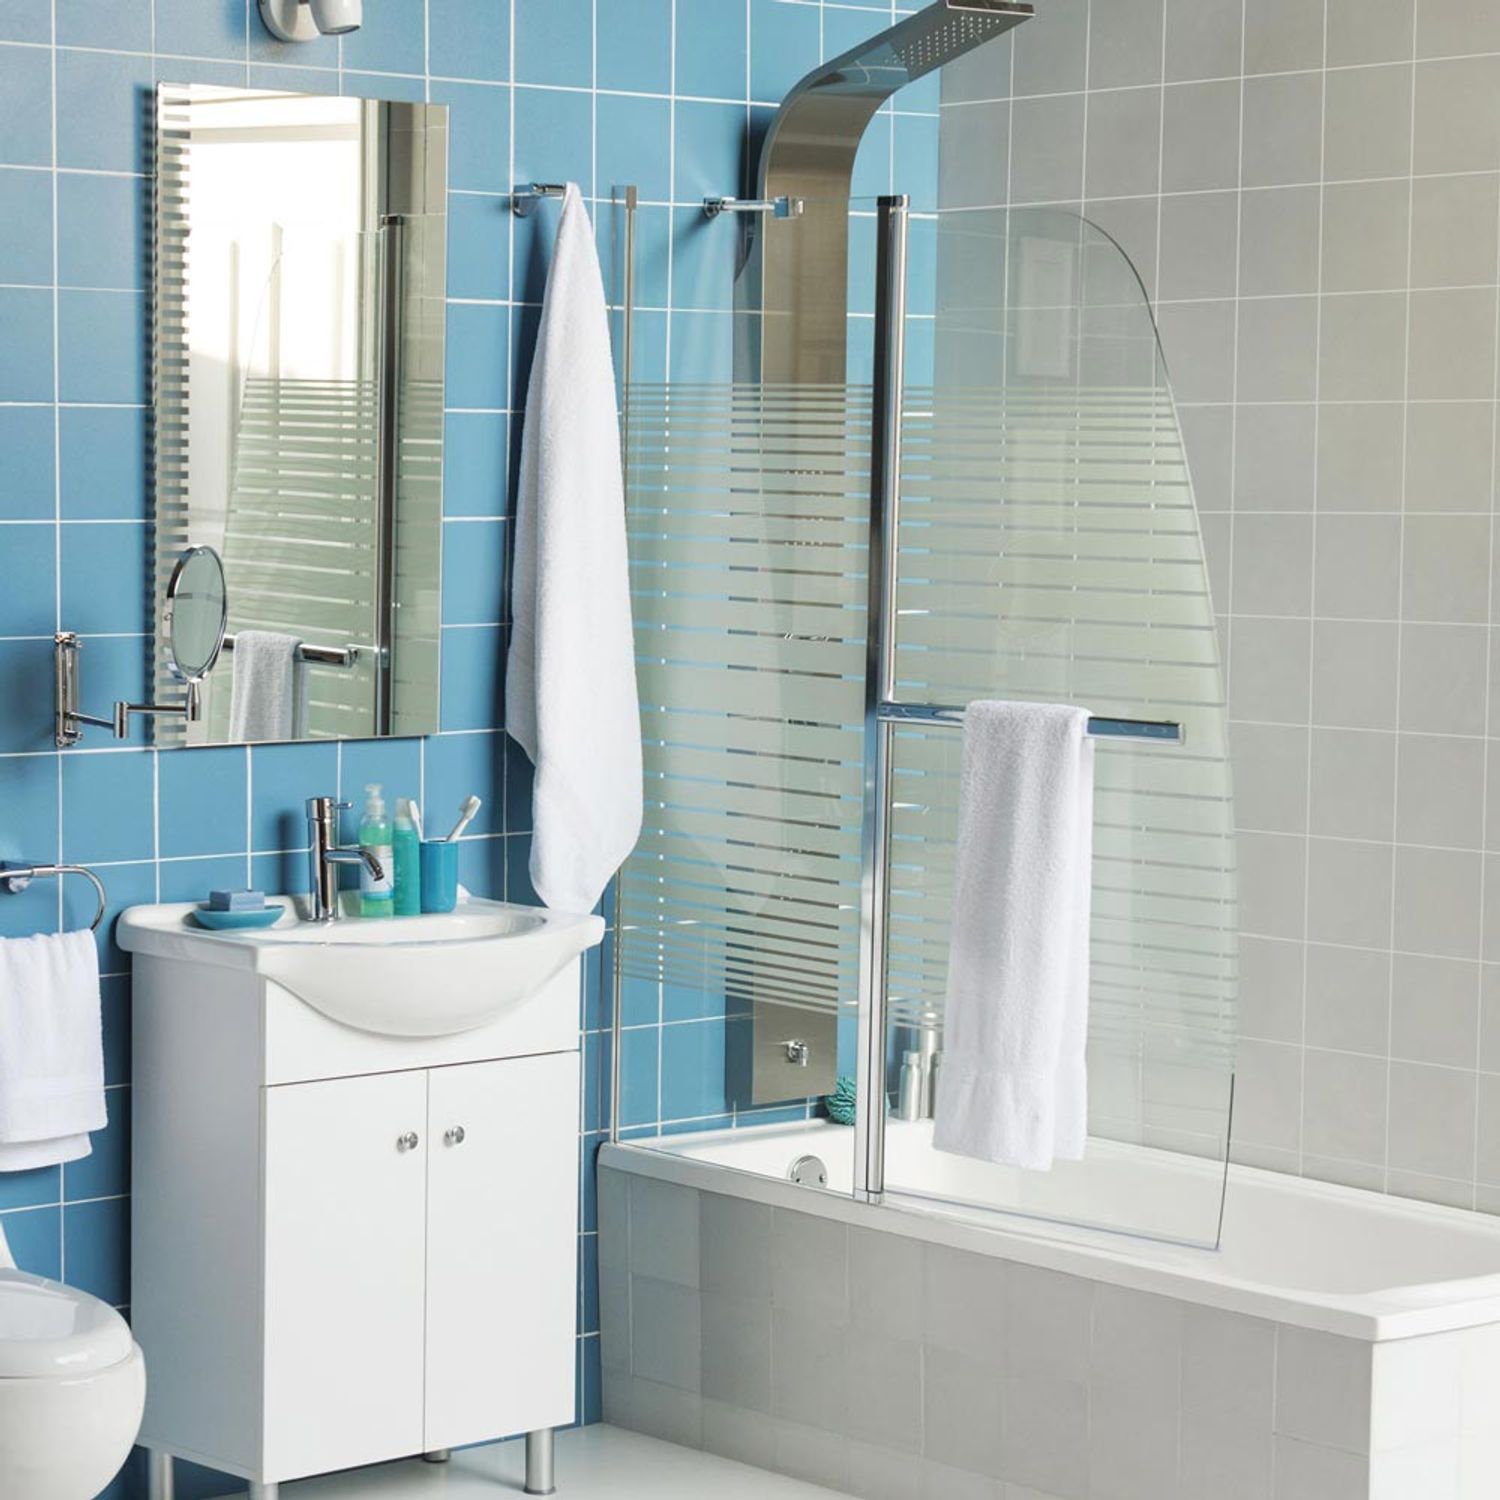 Tina o ducha: descubre la mejor opción para tu baño, FOTOS, CASA-Y-MAS